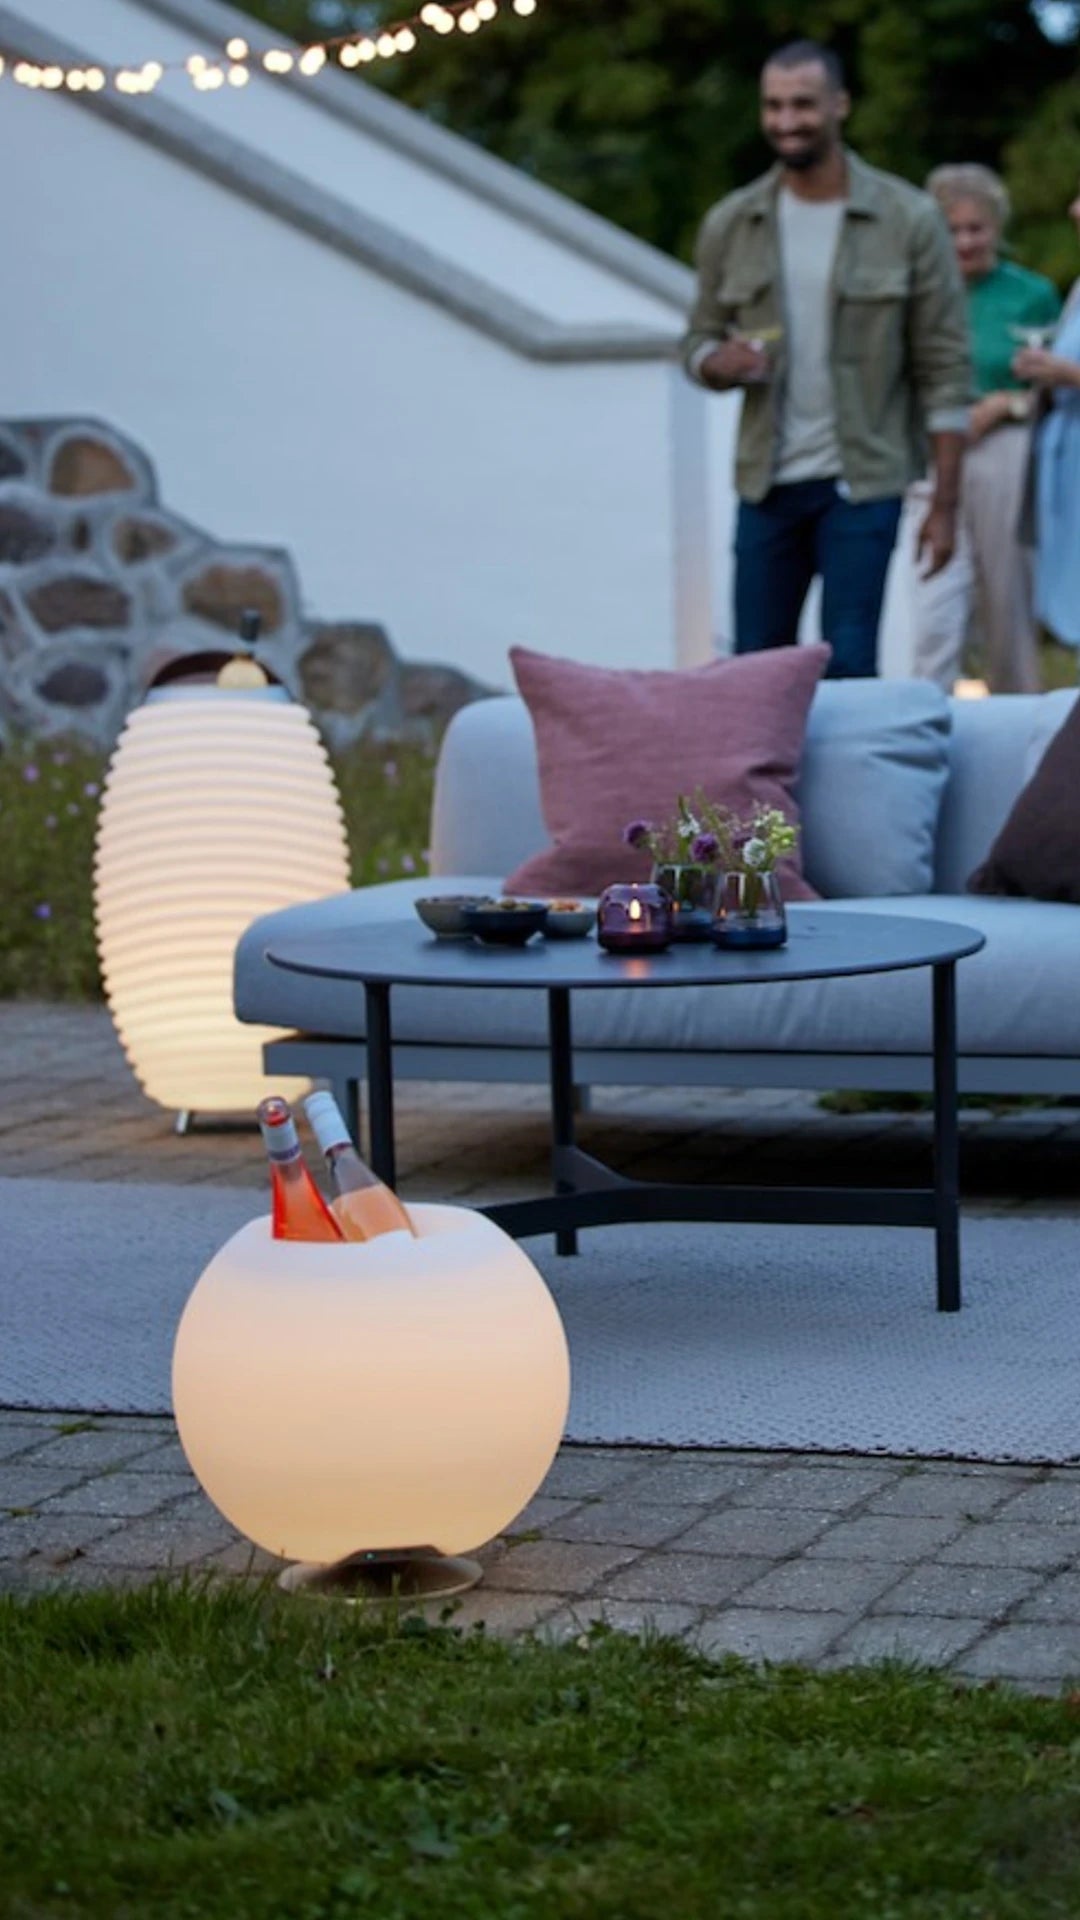 Kooduu | Sphere Brass | Design Lautsprecher Lampe von Jacob Jensen Design – | Tischlampen